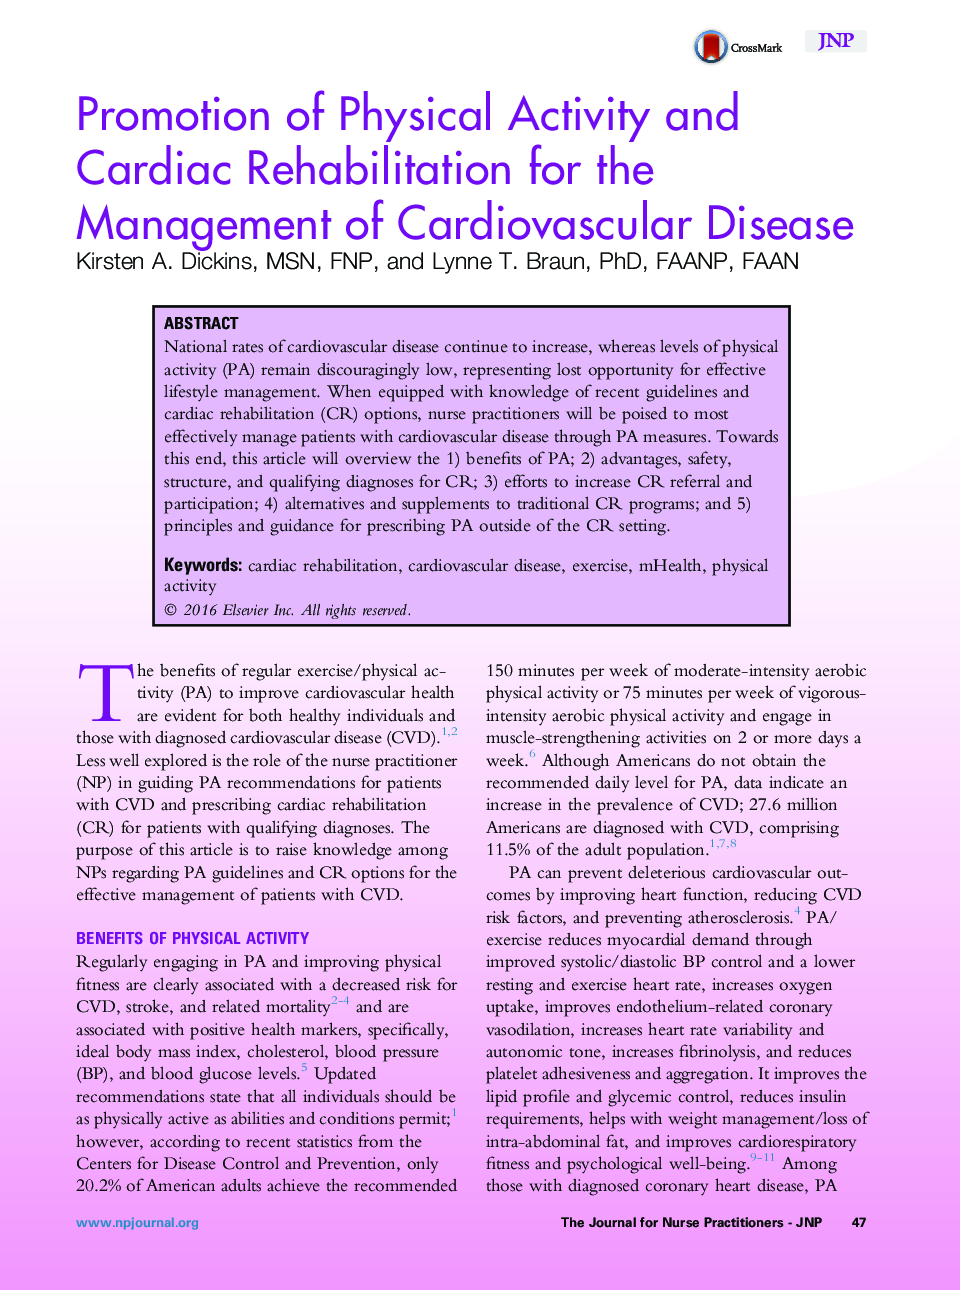 ارتقای فعالیت بدنی و توانبخشی قلب برای مدیریت بیماری قلبی عروقی